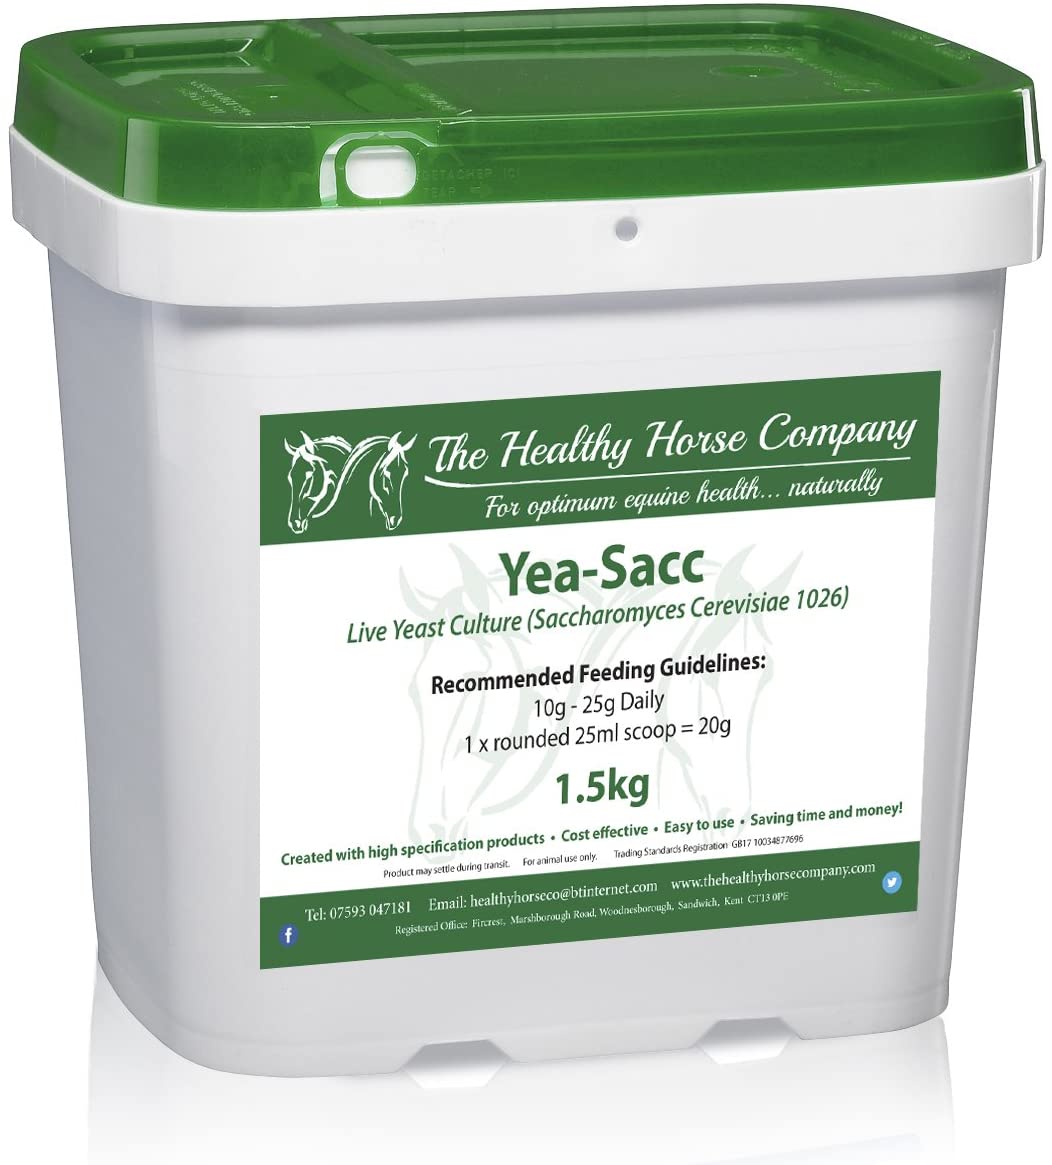 Yea-Sacc 1026 Live Yeast Culture